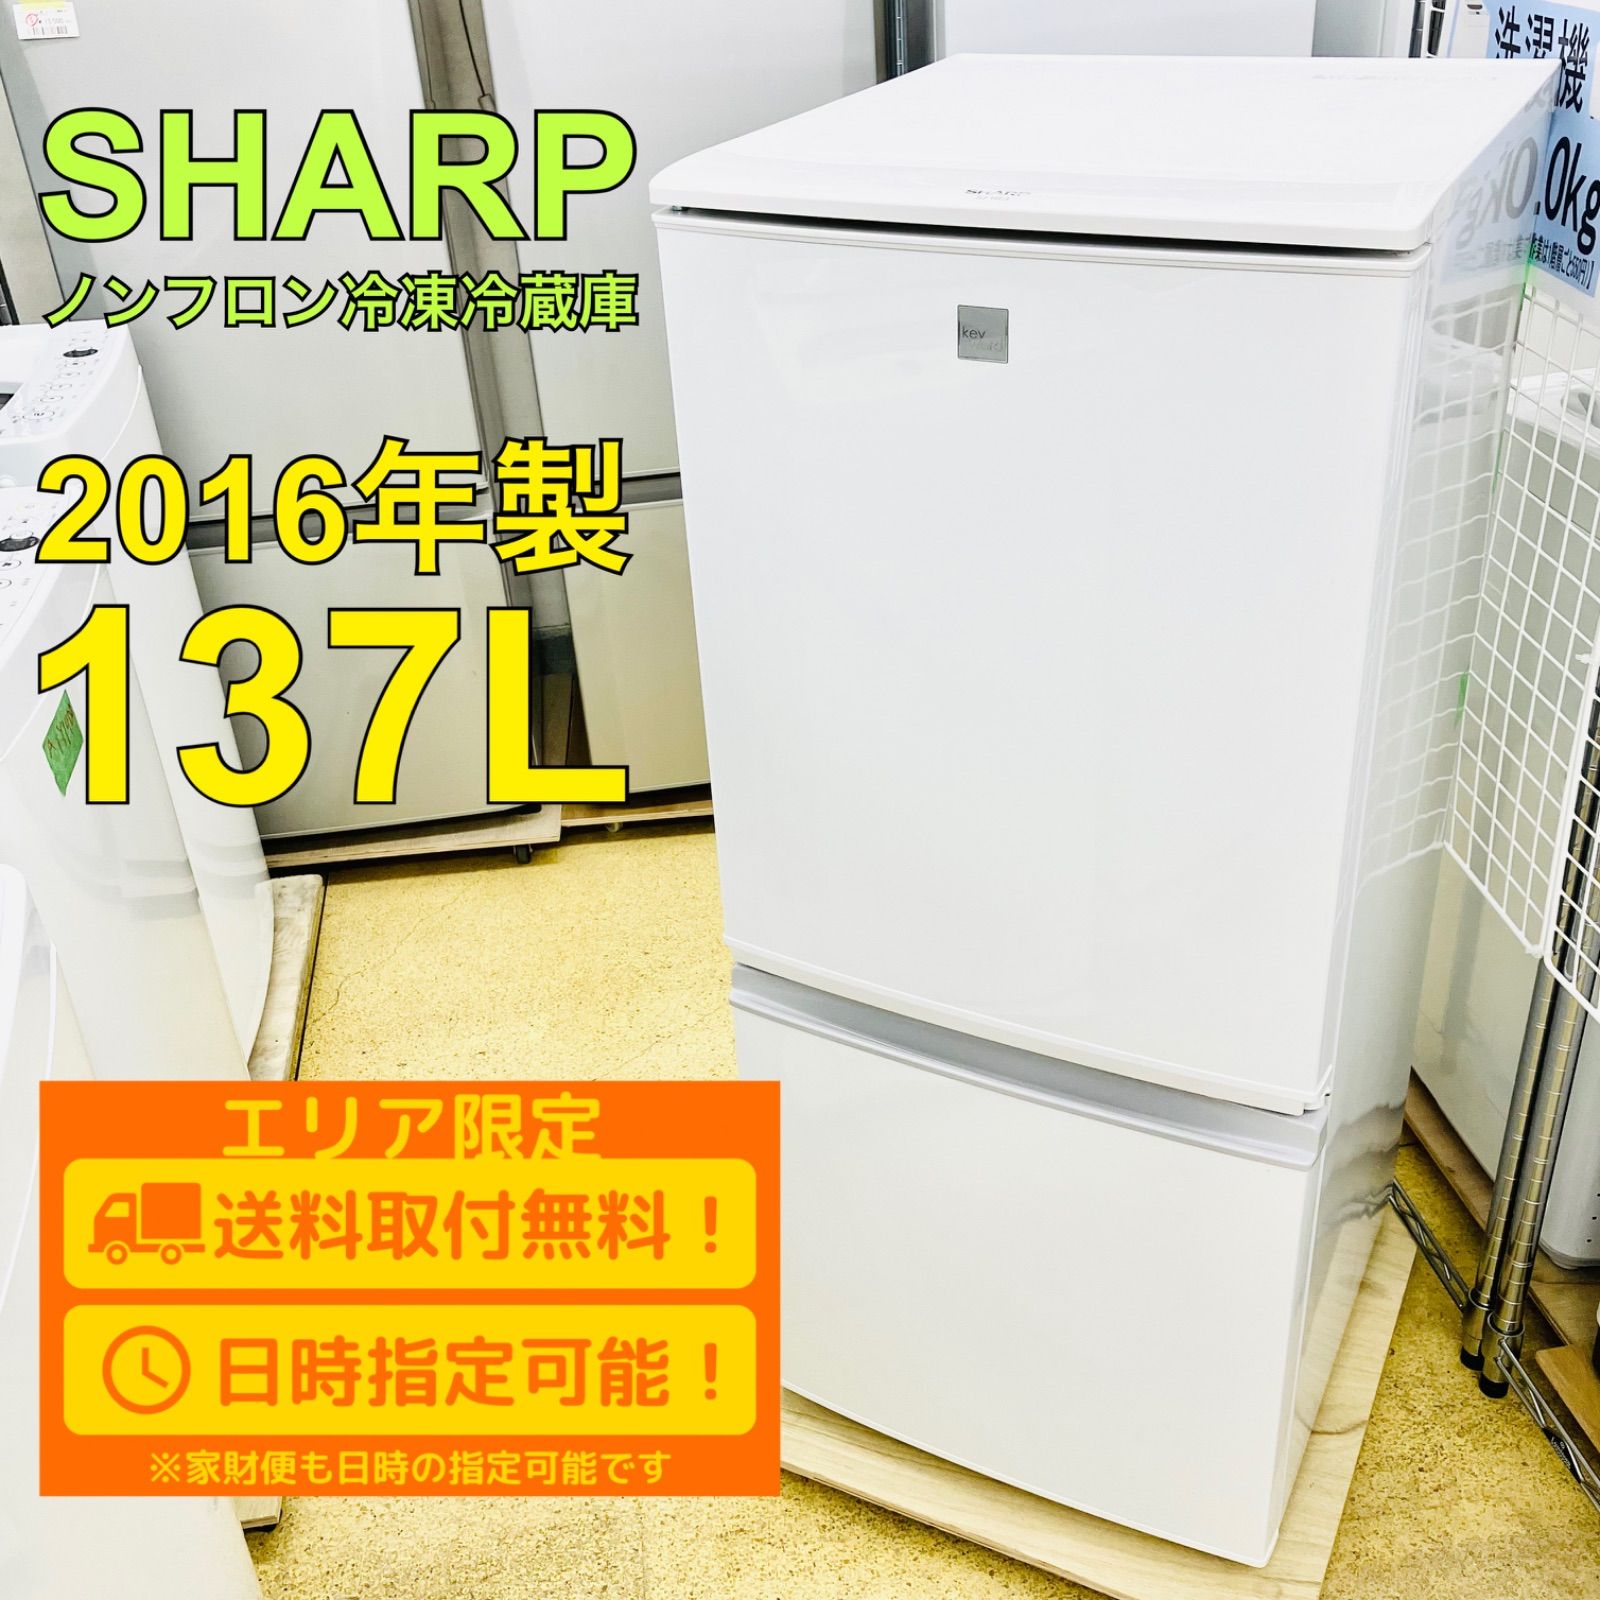 SHARP シャープ 137L 2ドア 冷蔵庫 SJ-14E3-KW 2016年製 一人暮らし